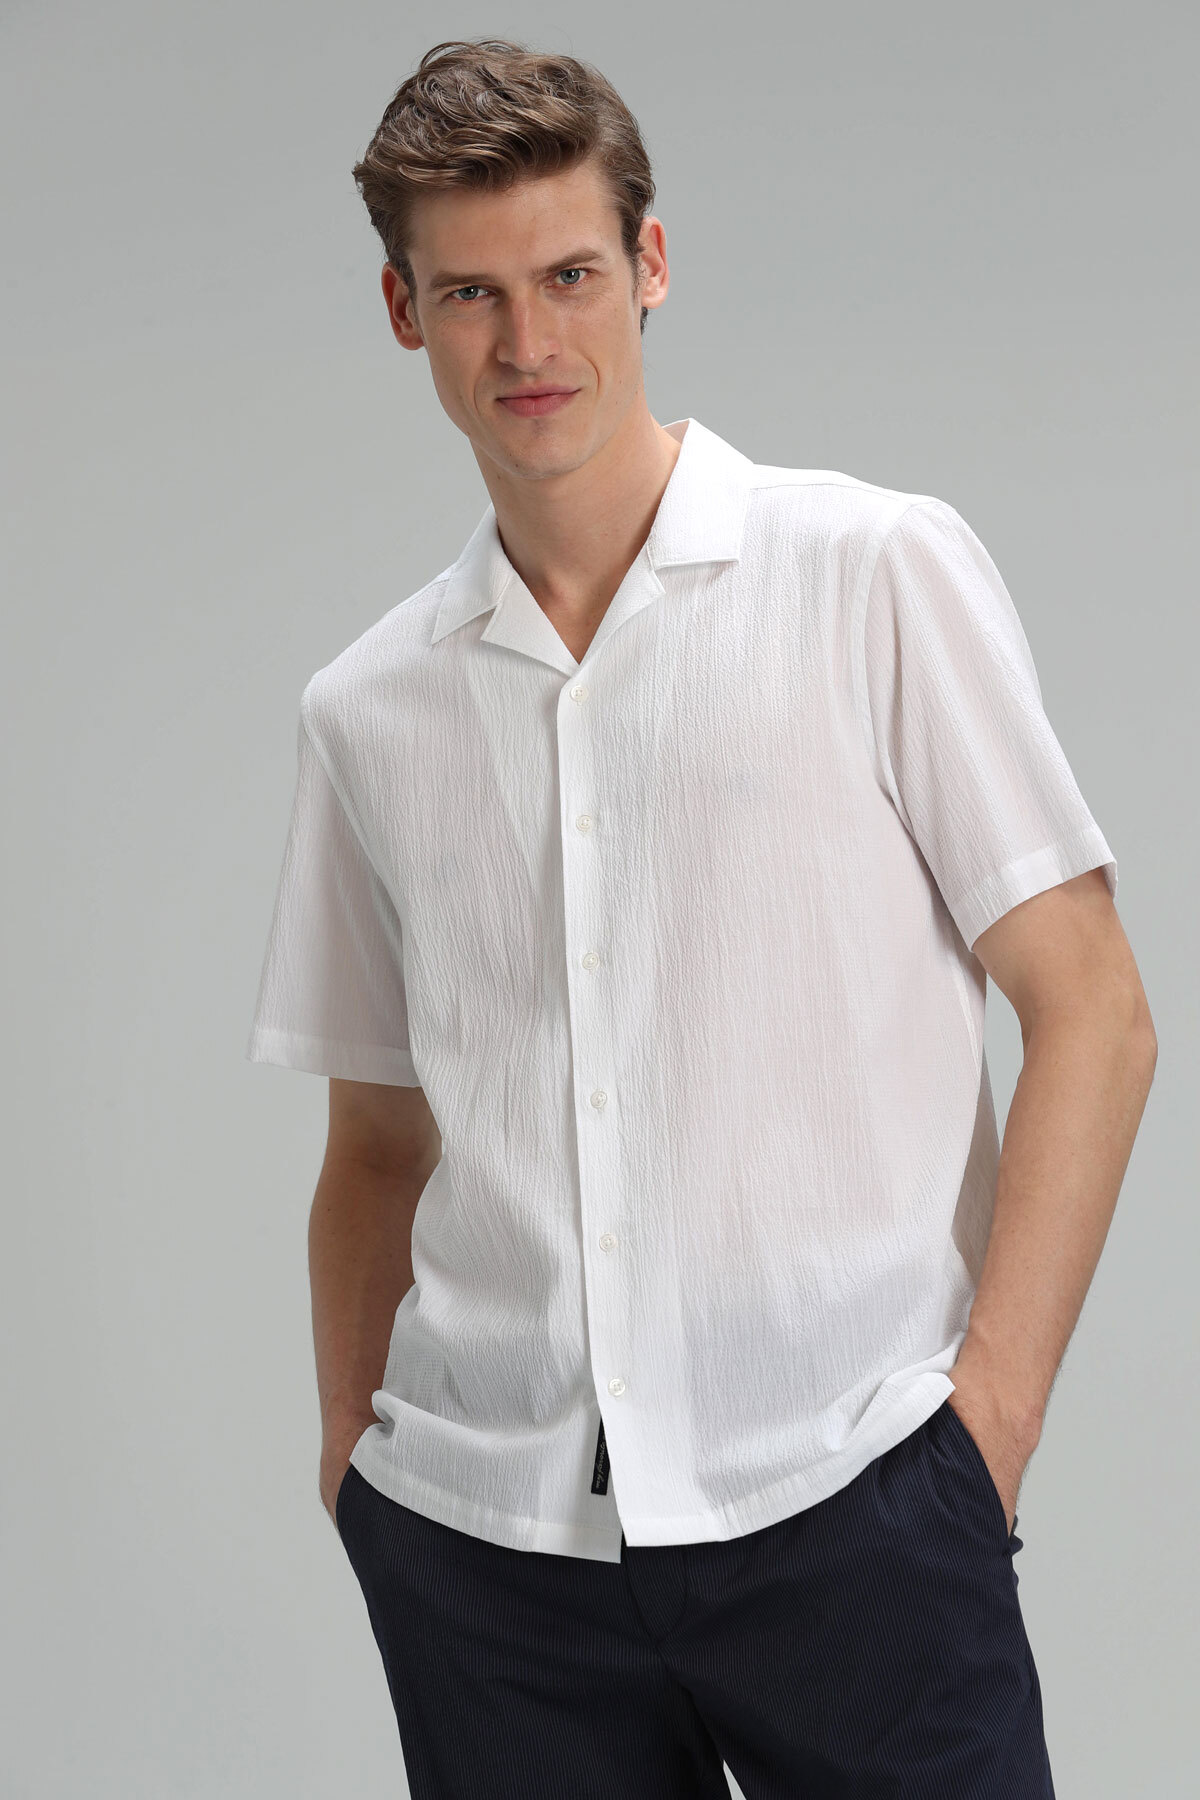 Revla Erkek Spor Gömlek Resort Fıt Beyaz